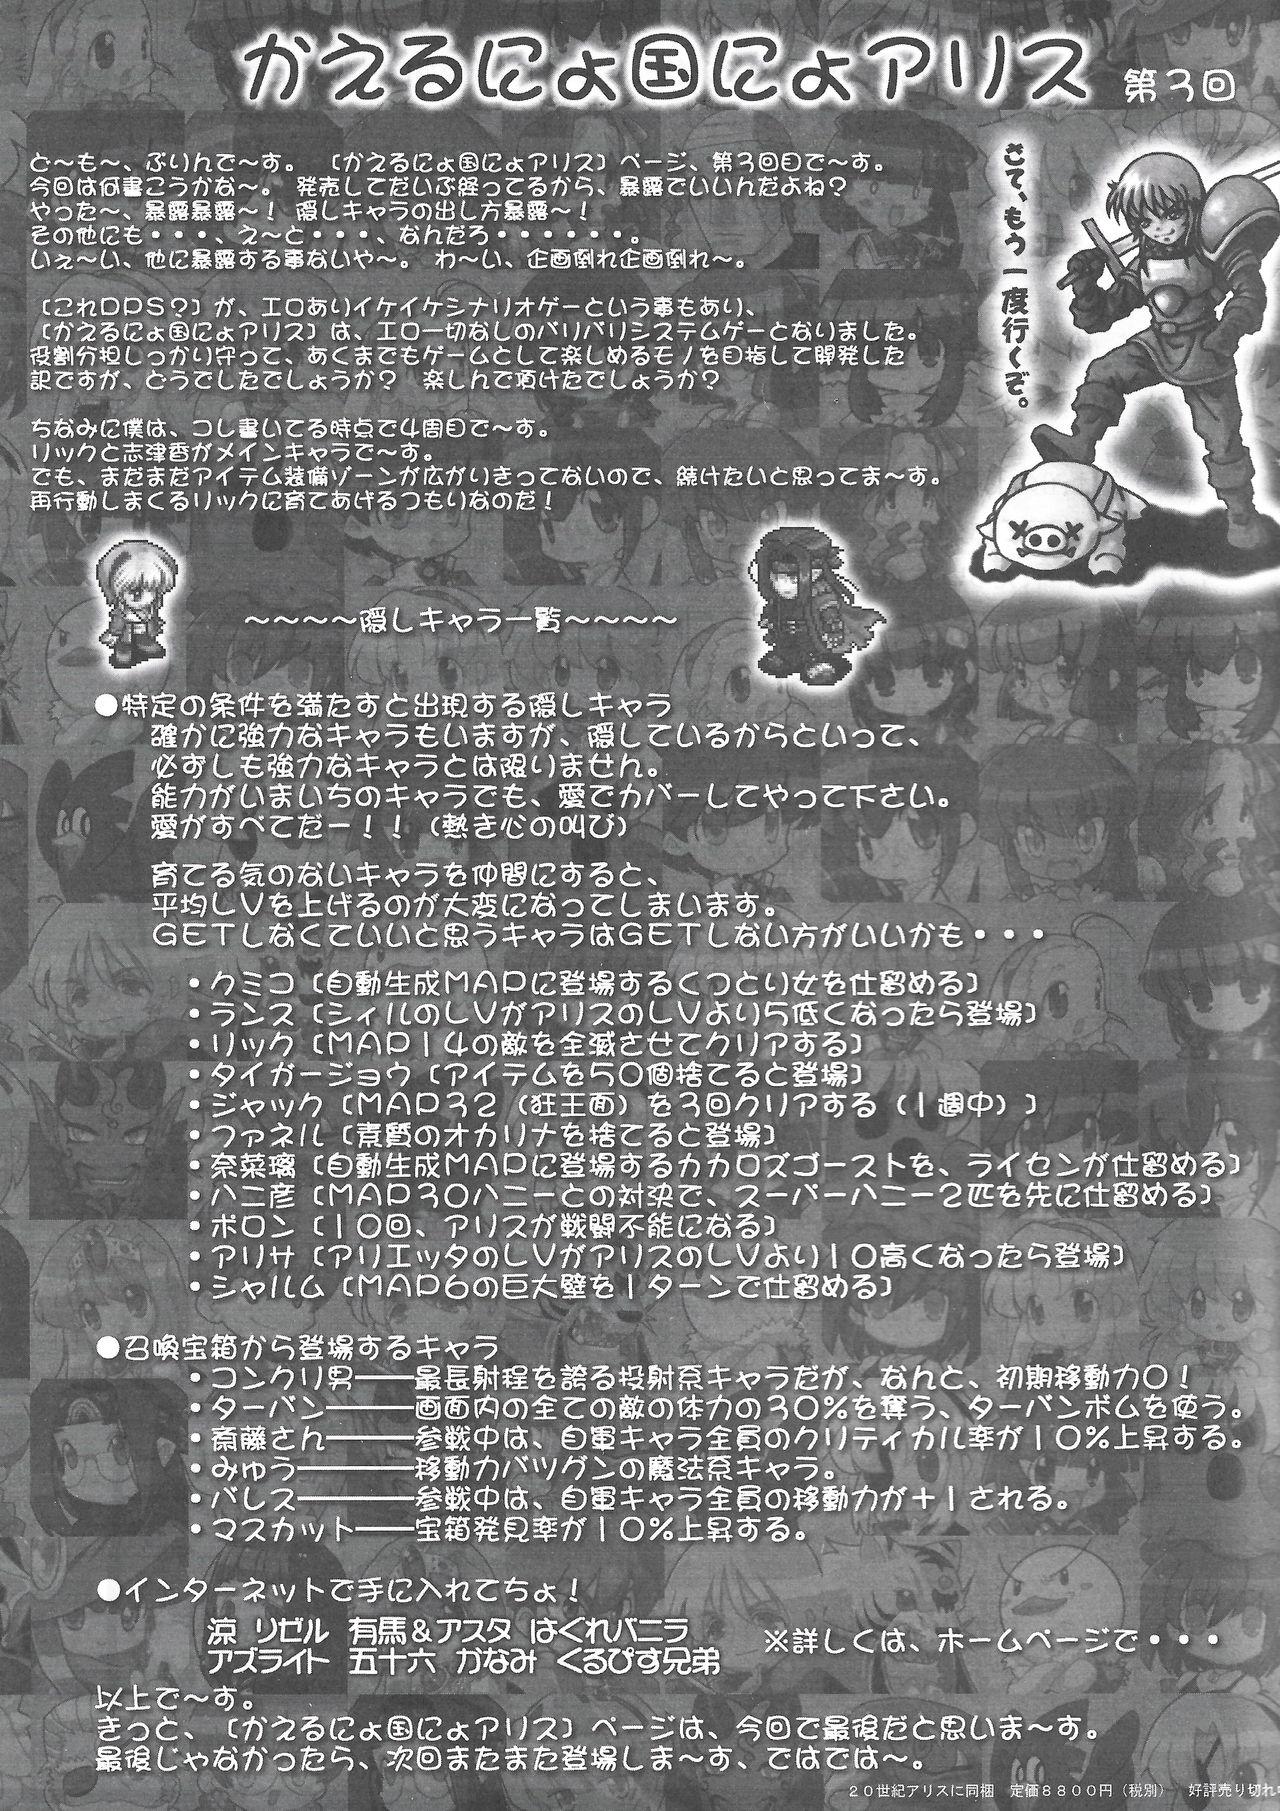 Arisu no Denchi Bakudan Vol. 15 7